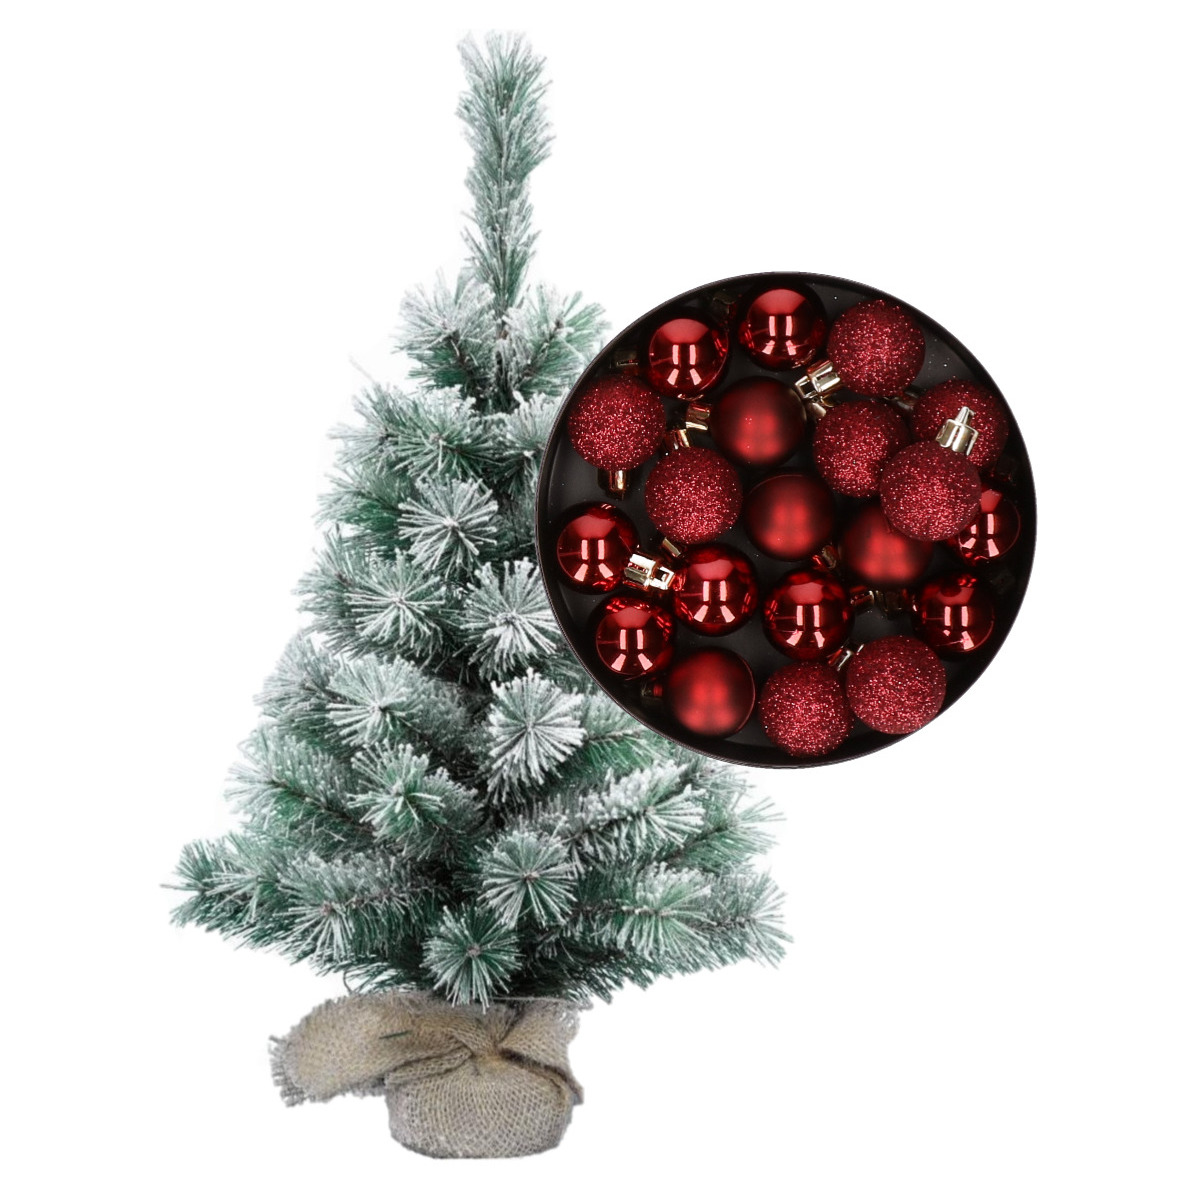 Besneeuwde mini kerstboom-kunst kerstboom 35 cm met kerstballen donkerrood